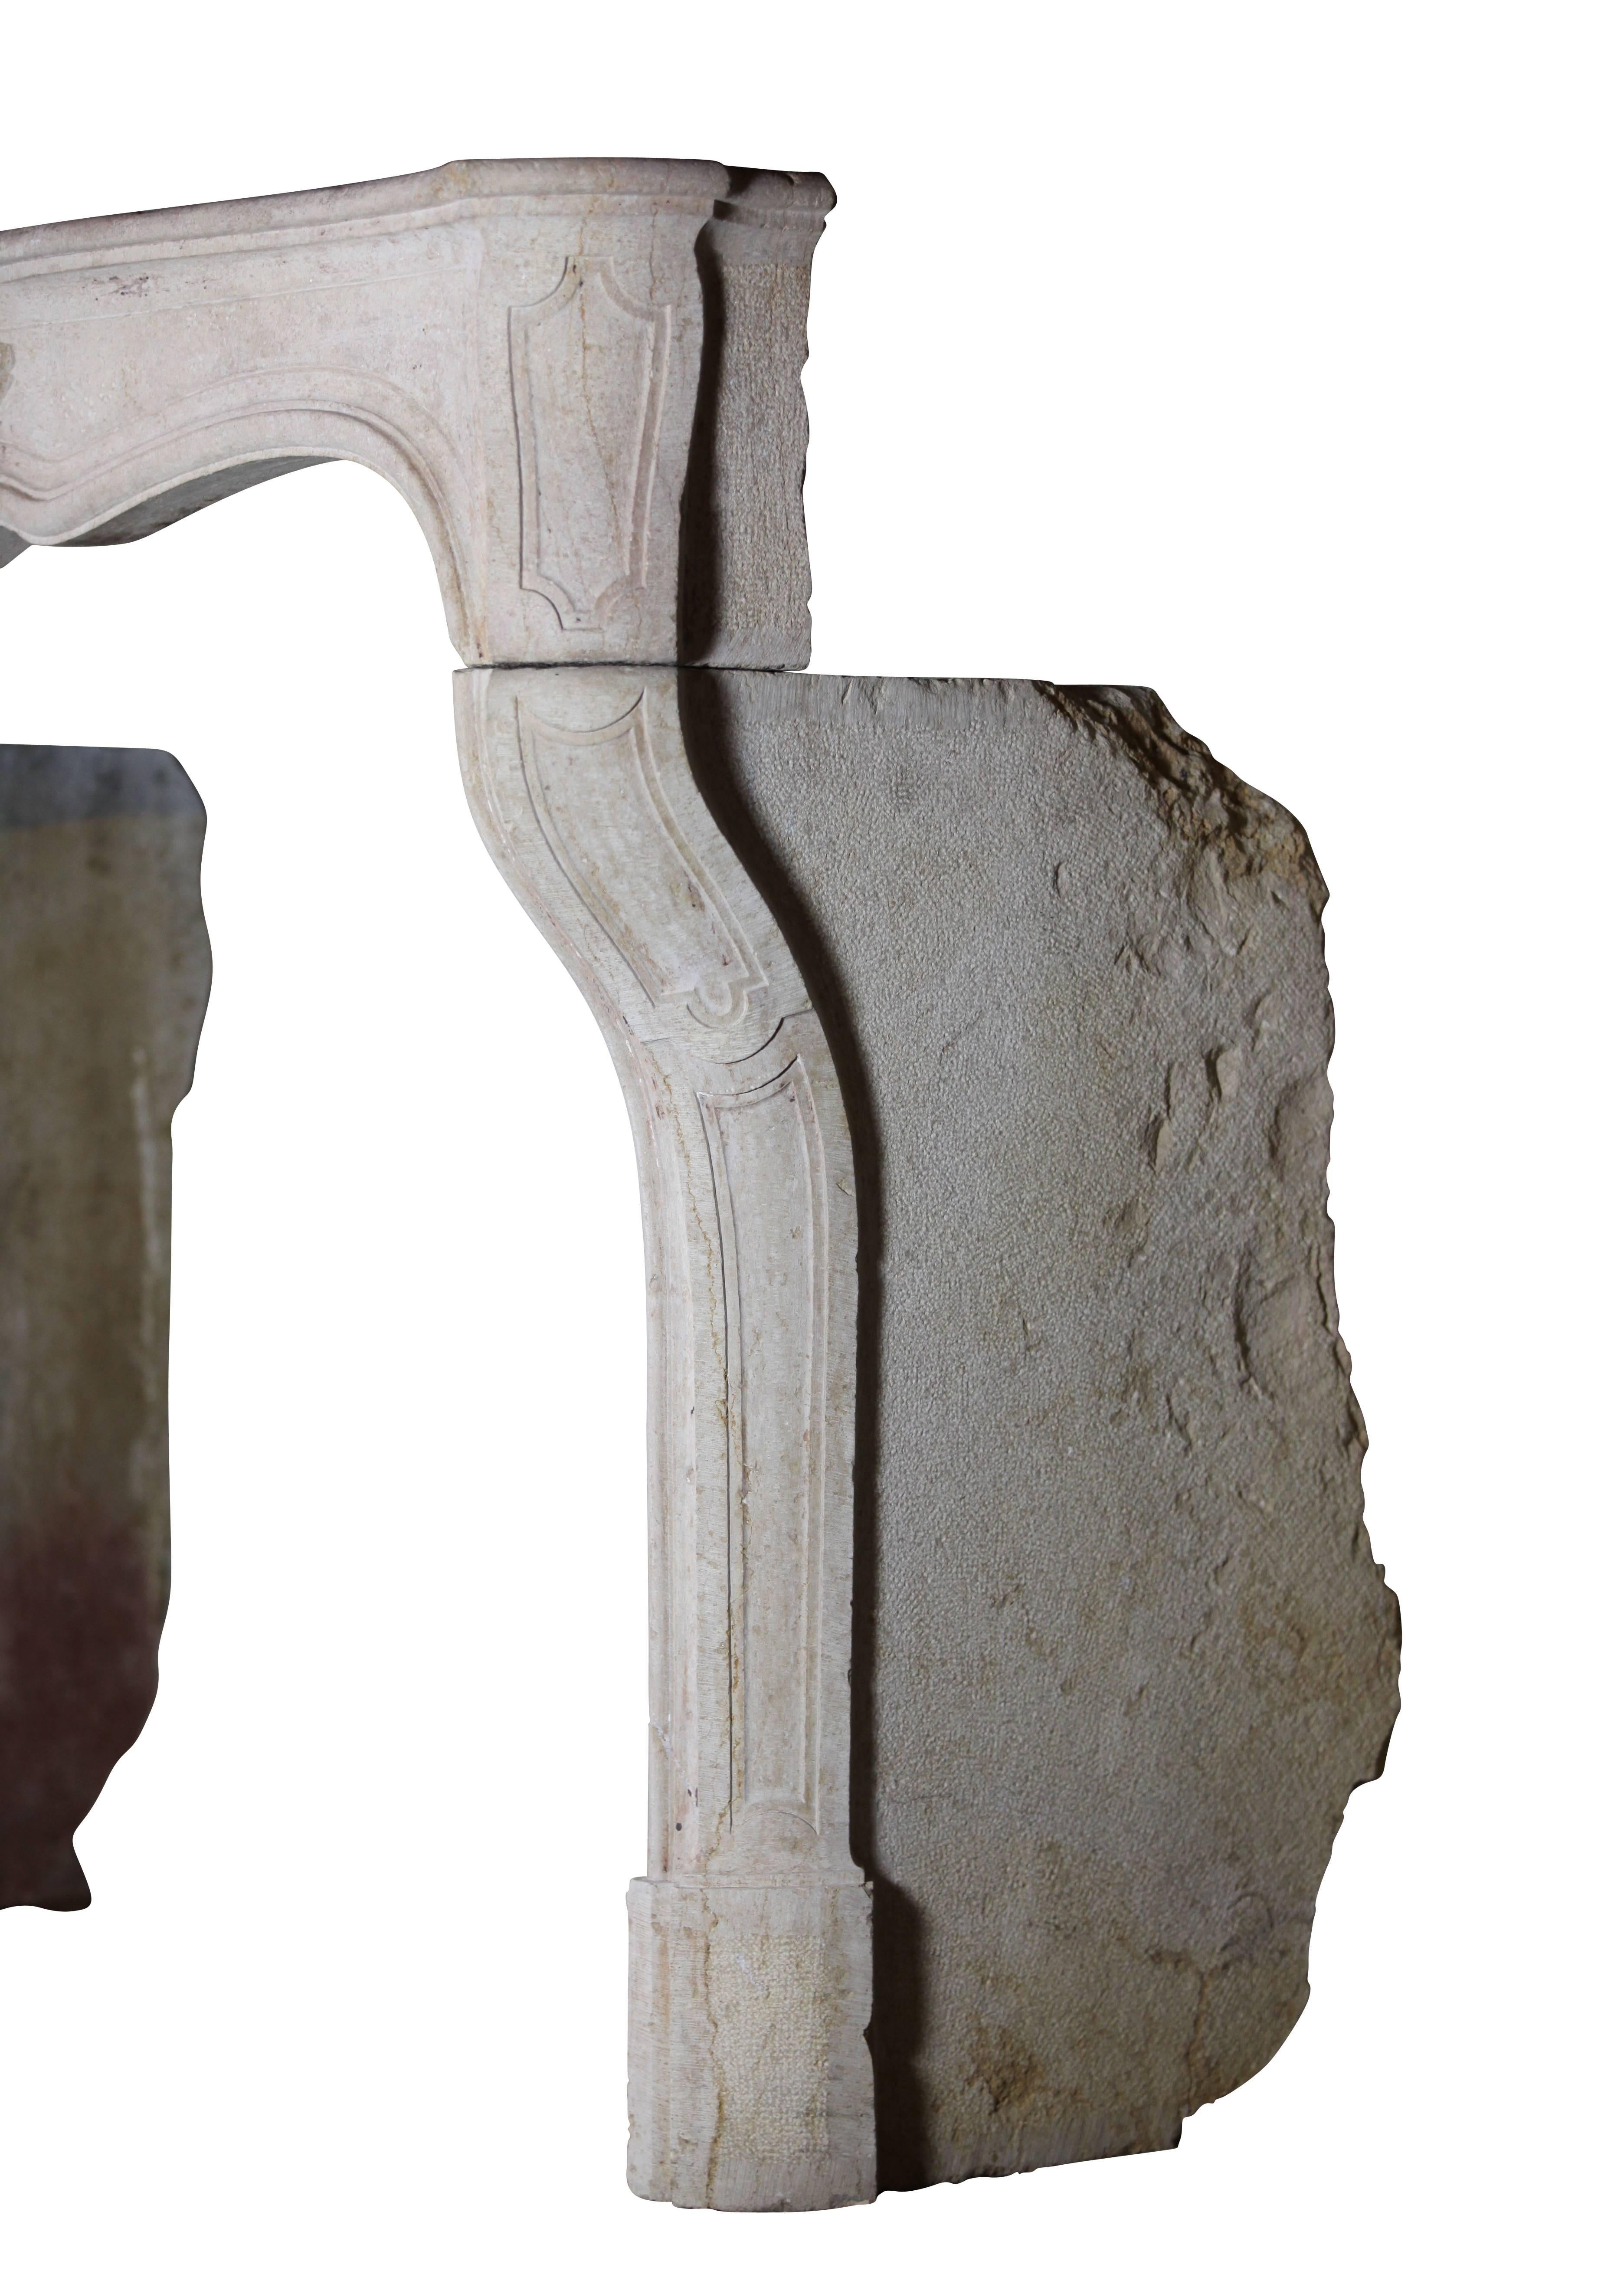 Pierre Manteau de cheminée en pierre calcaire du XVIIIe siècle LXV Classic French Country Antique en vente